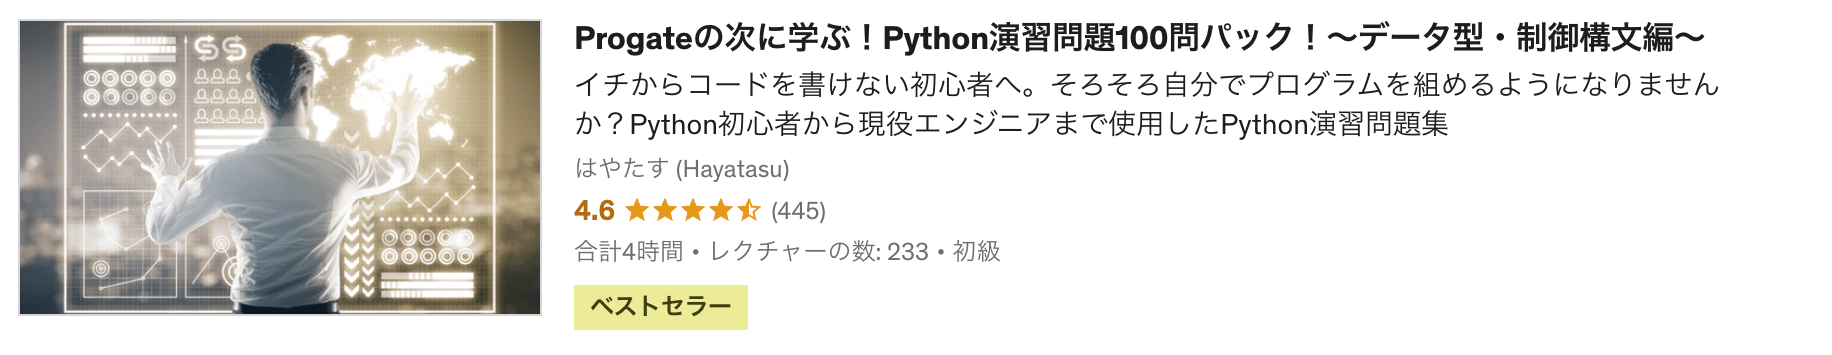 python-exercise100